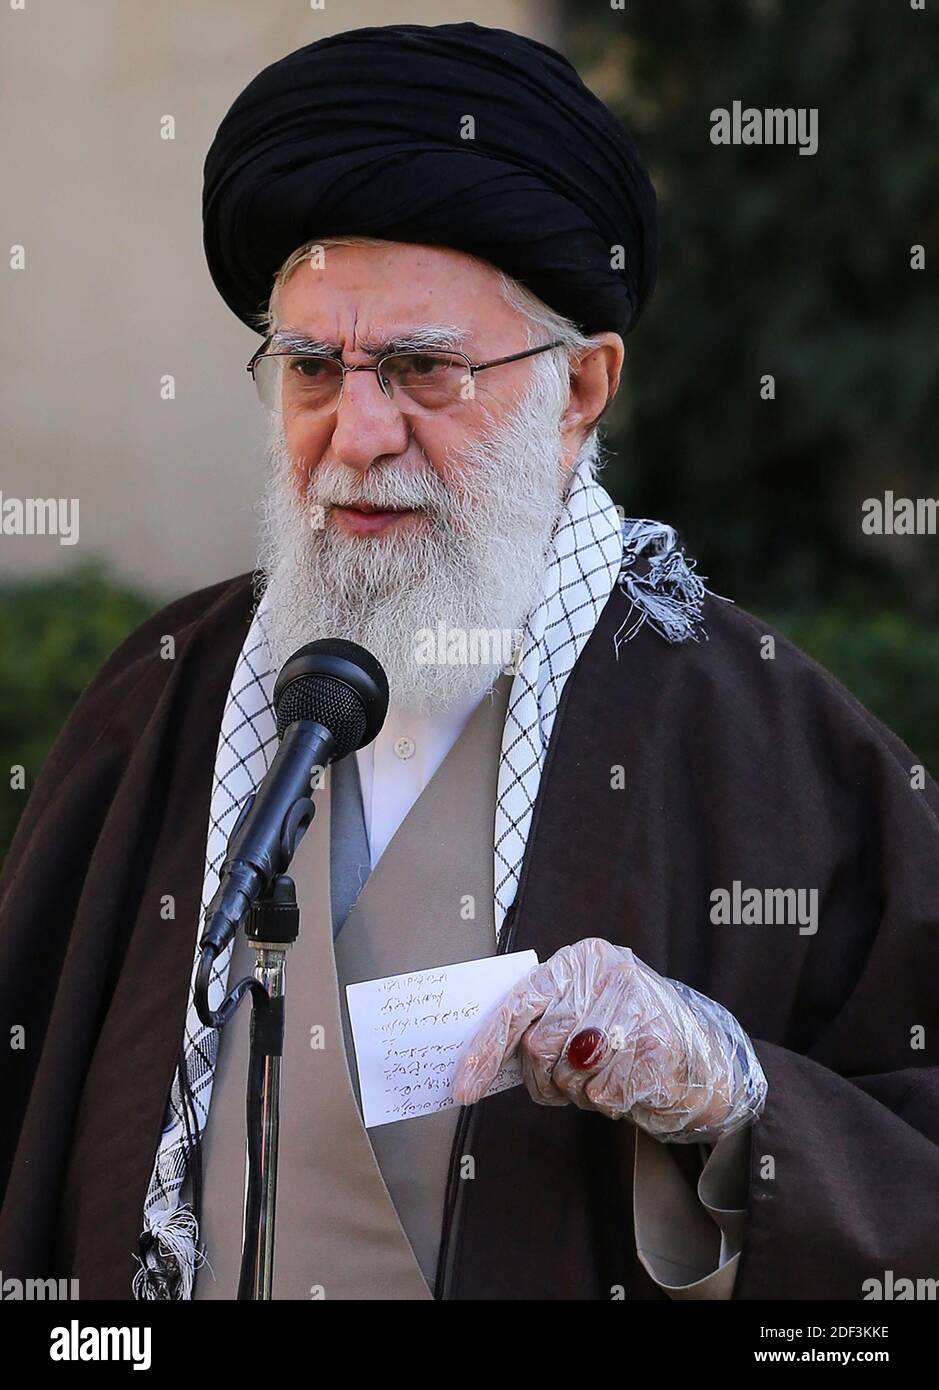 Il leader supremo dell'Iran Ayatollah Ali Khamenei innaffia un albero appena piantato in un giardino durante una cerimonia che segna la settimana delle "risorse naturali" nella capitale Teheran. Khamenei ha chiesto agli iraniani di attenersi alle linee guida per l'igiene per impedire la diffusione del nuovo coronavirus. 'Le linee guida sanitarie per prevenire l'infezione da questo virus dovrebbero essere osservate,' ha detto sulla televisione di stato mentre indossava guanti come ha piantato un albero. Il leader supremo ha affermato che l'Iran era trasparente con i suoi dati sull'epidemia e ha accusato altri paesi di cercare di nasconderli. Teheran, Iran, marzo Foto Stock